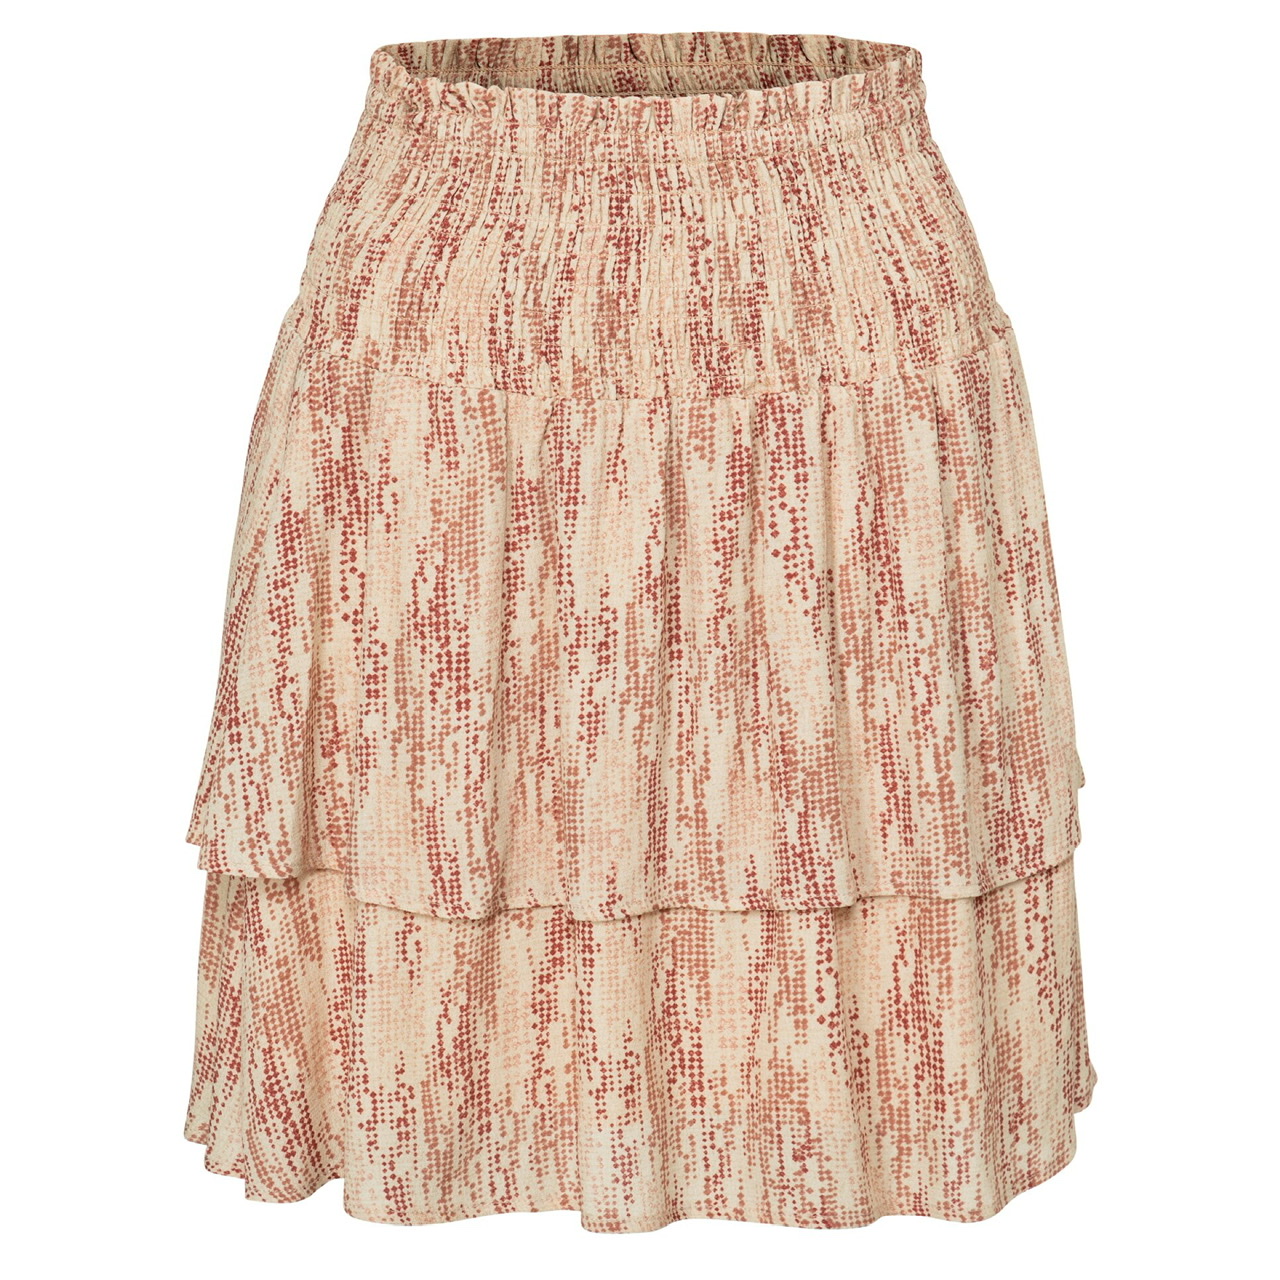 Yaya Printed Skirt with Smocked Waistband - Brazilian Sand & Cedar Wood Red